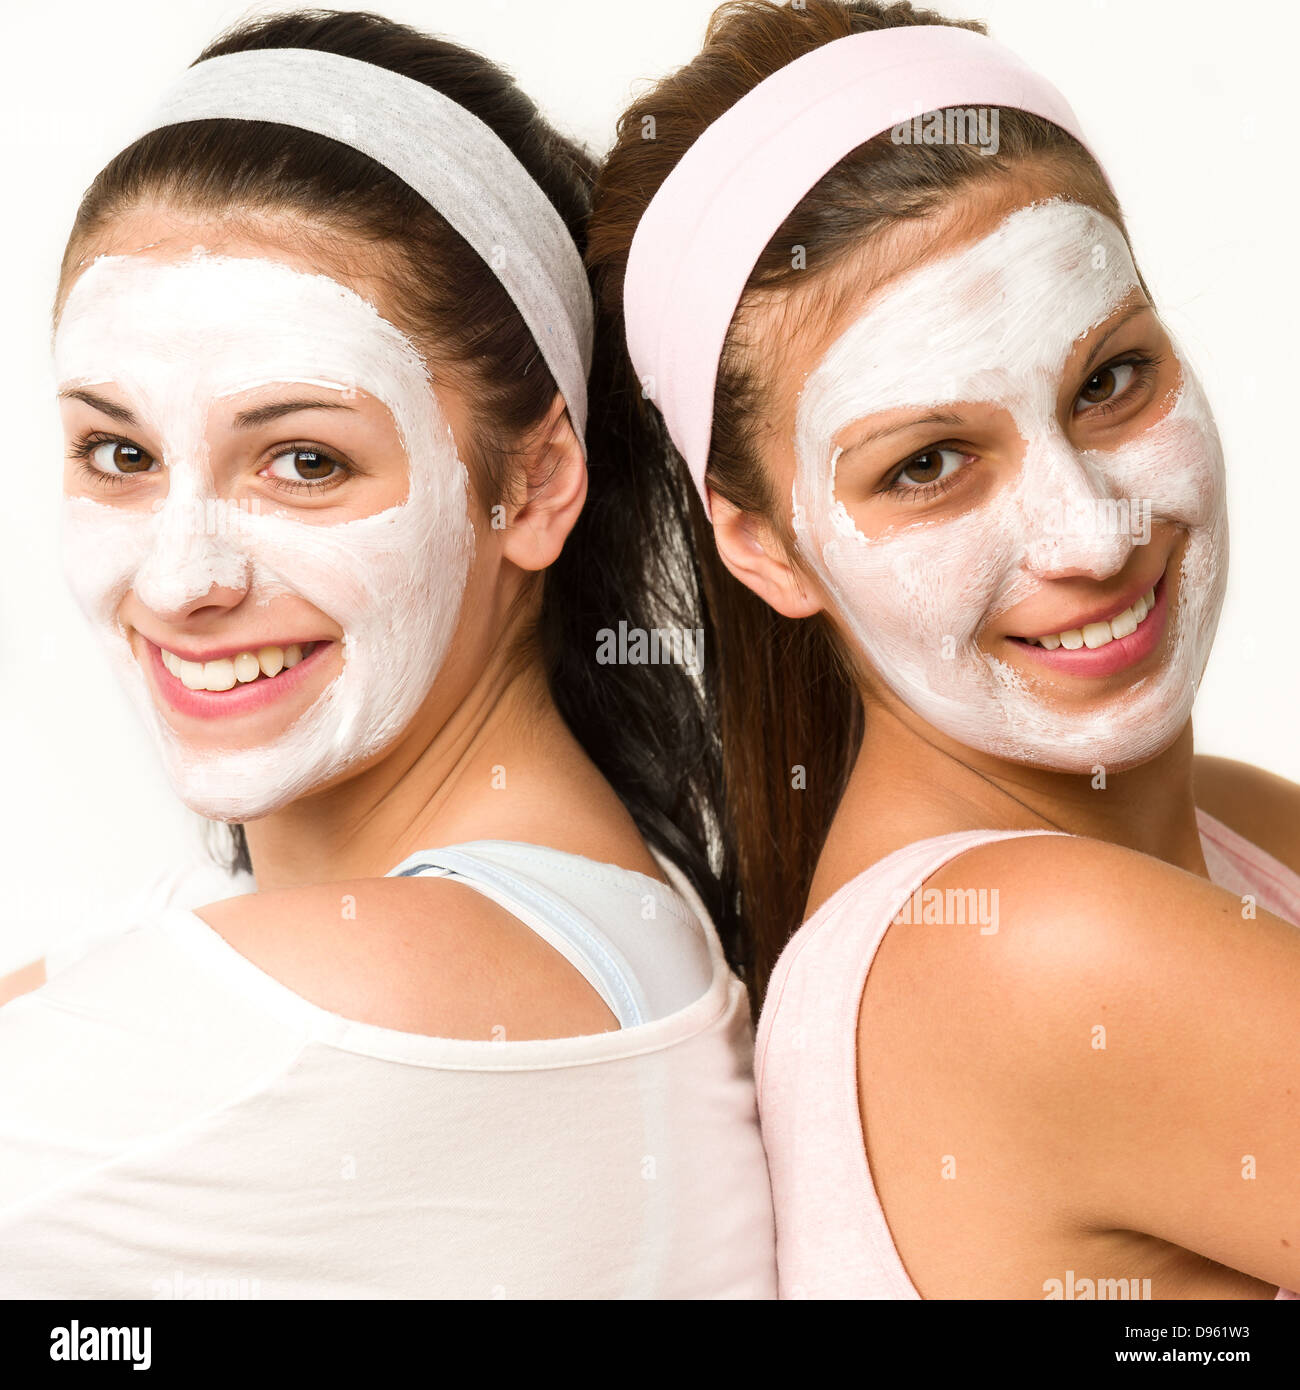 Las niñas de raza blanca feliz con máscara facial blanca Foto de stock